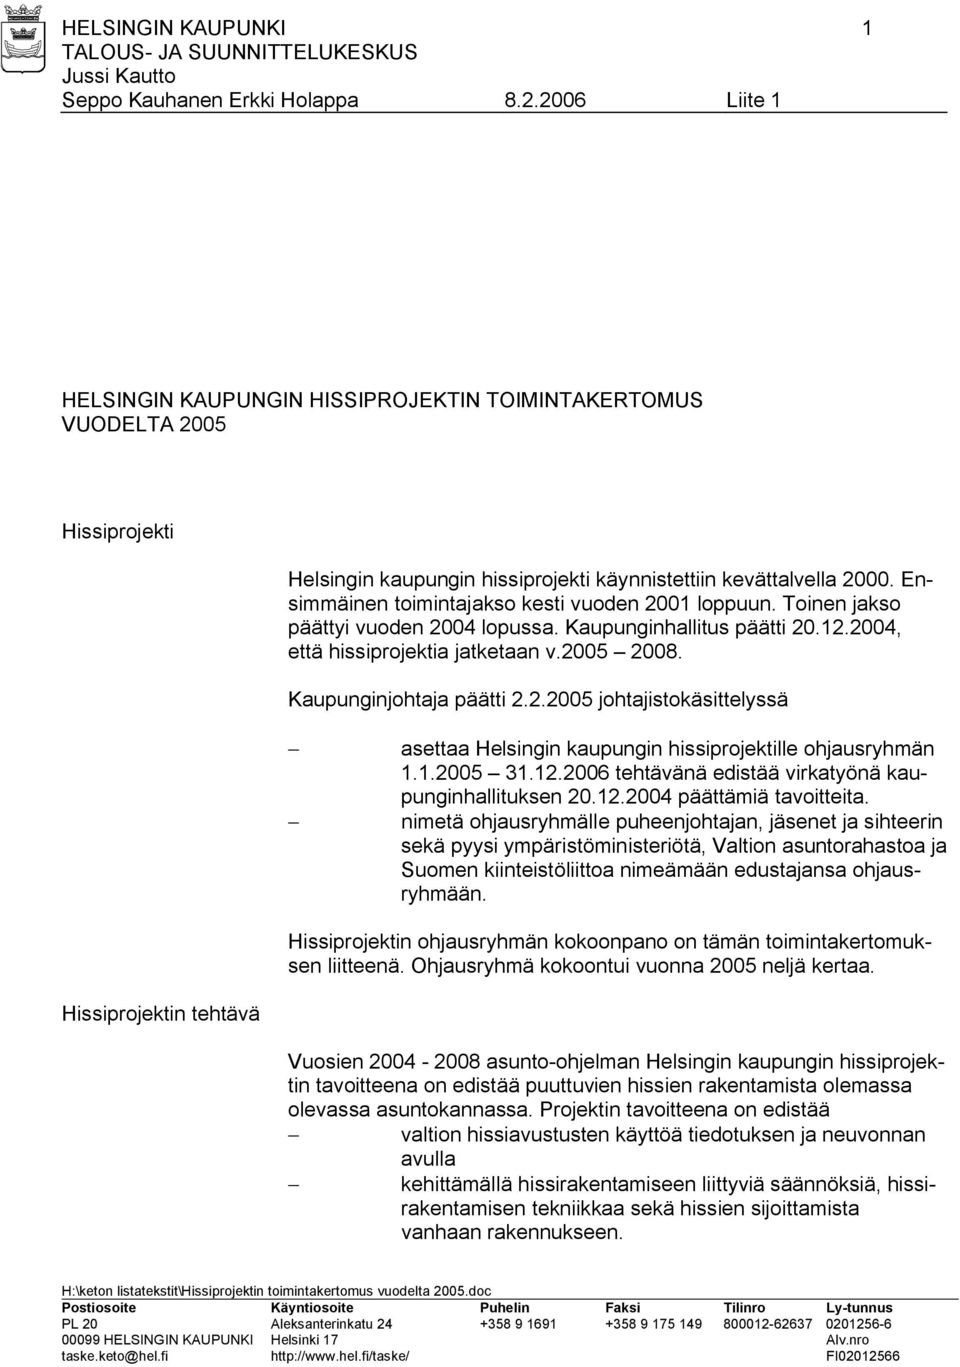 Kaupunginjohtaja päätti 2.2.2005 johtajistokäsittelyssä asettaa Helsingin kaupungin hissiprojektille ohjausryhmän 1.1.2005 31.12.2006 tehtävänä edistää virkatyönä kaupunginhallituksen 20.12.2004 päättämiä tavoitteita.